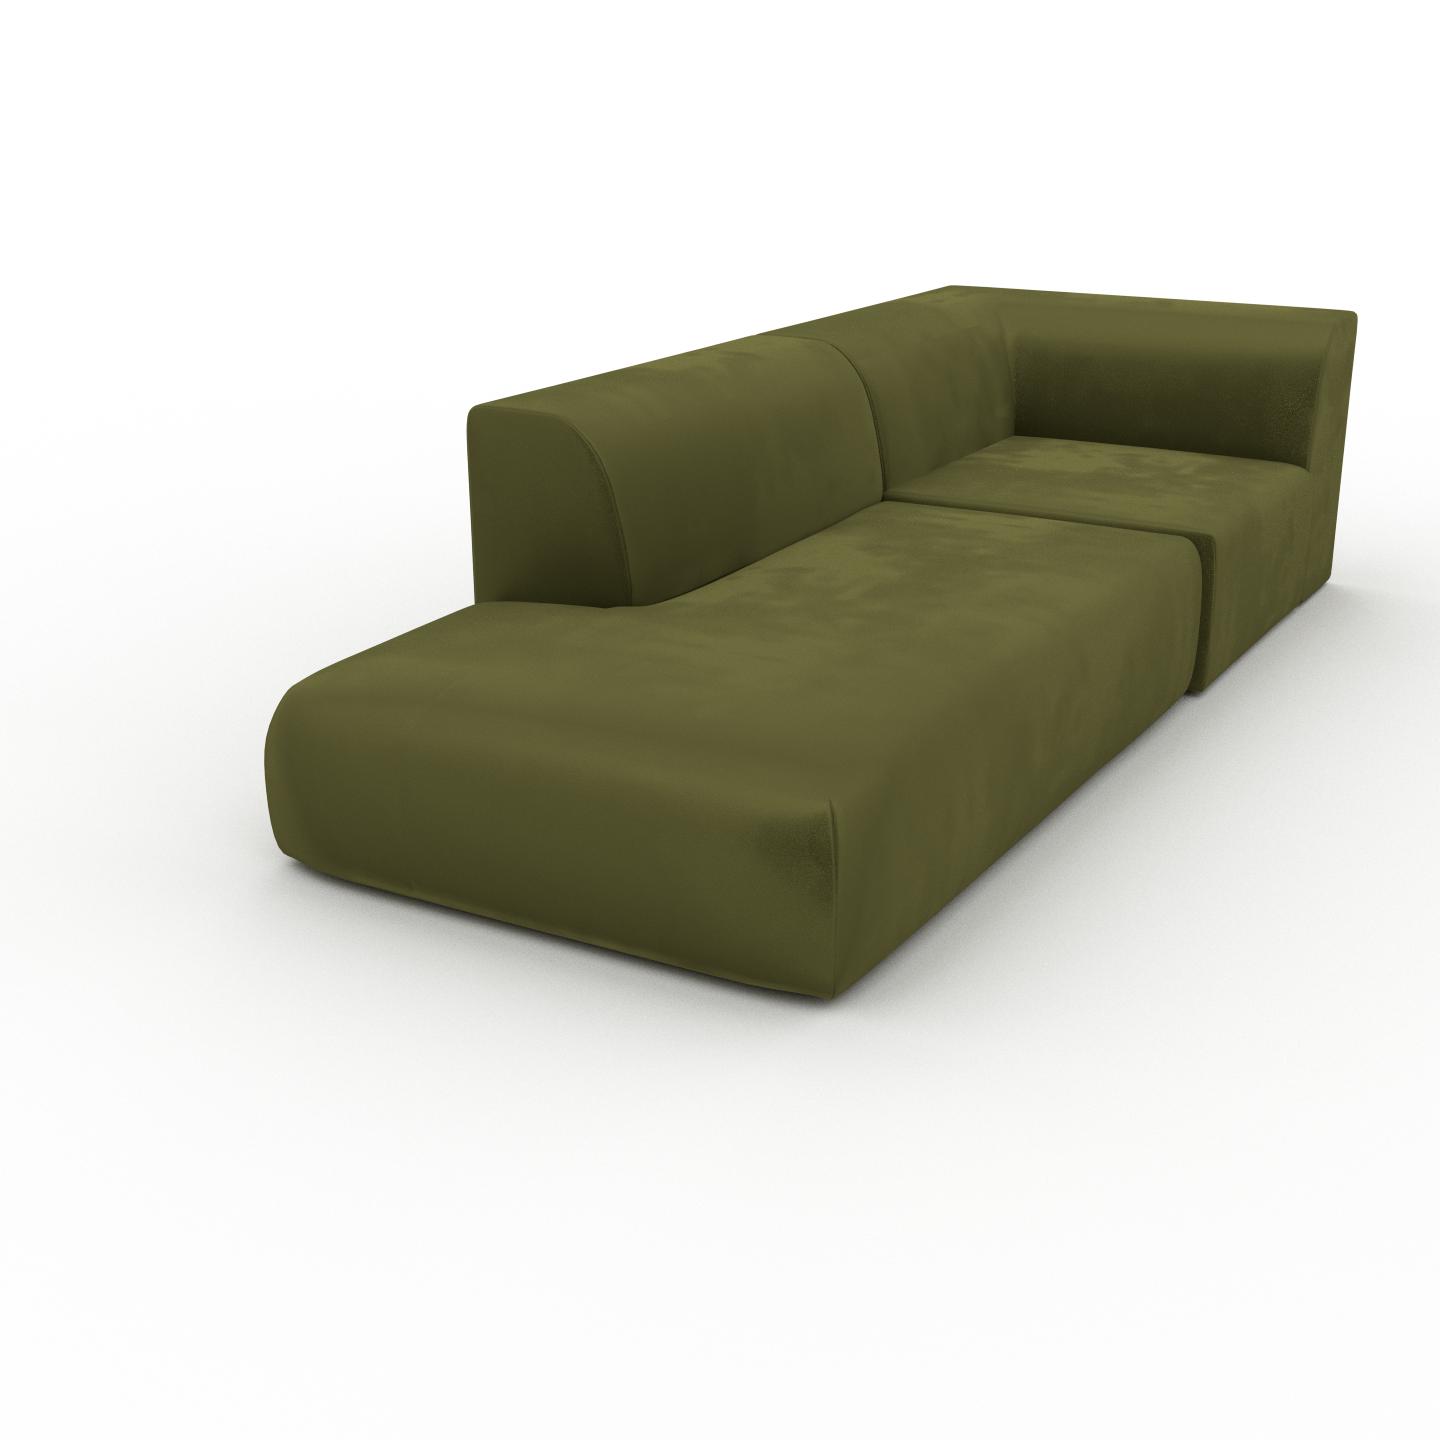 MYCS Sessel Samt Olivgrün - Eleganter Sessel: Hochwertige Qualität, einzigartiges Design - 107 x 72 x 267 cm, Individuell konfigurierbar